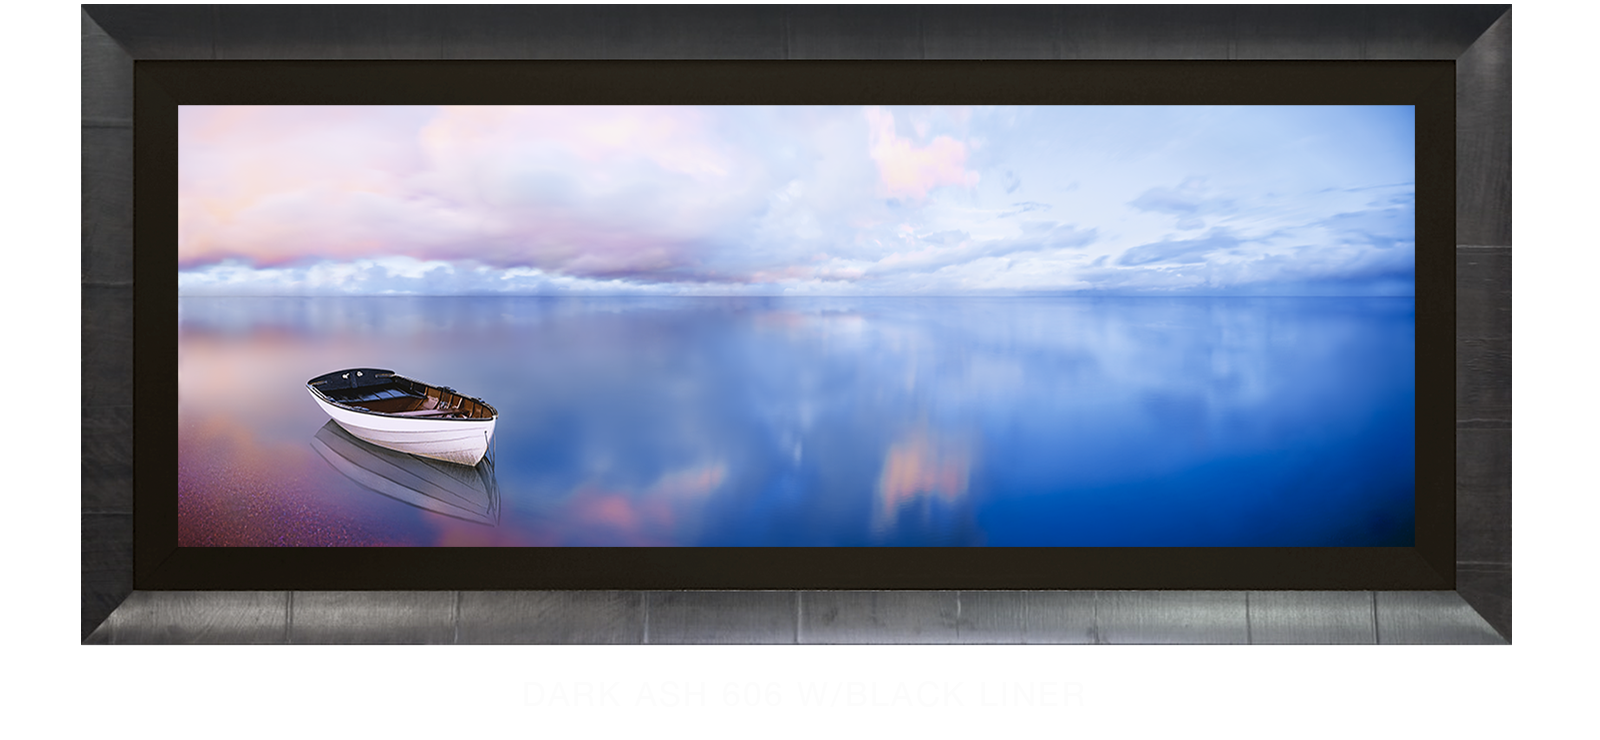 17BLUELAKEBOAT Dark Ash 606 w_Blk Liner T